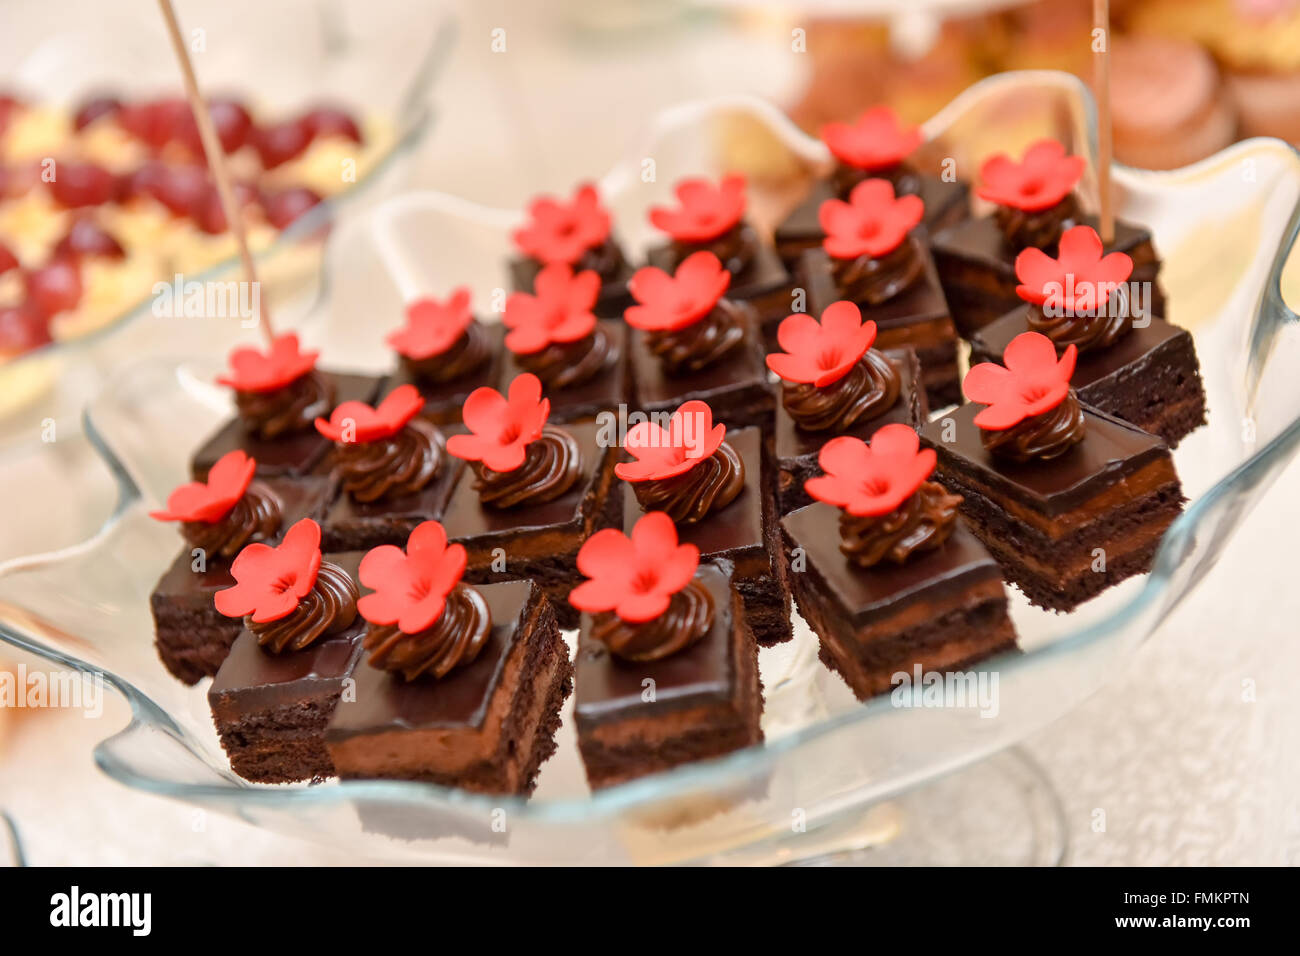 Pasteles de chocolate con flor roja que se coloca en un plato de cristal Foto de stock